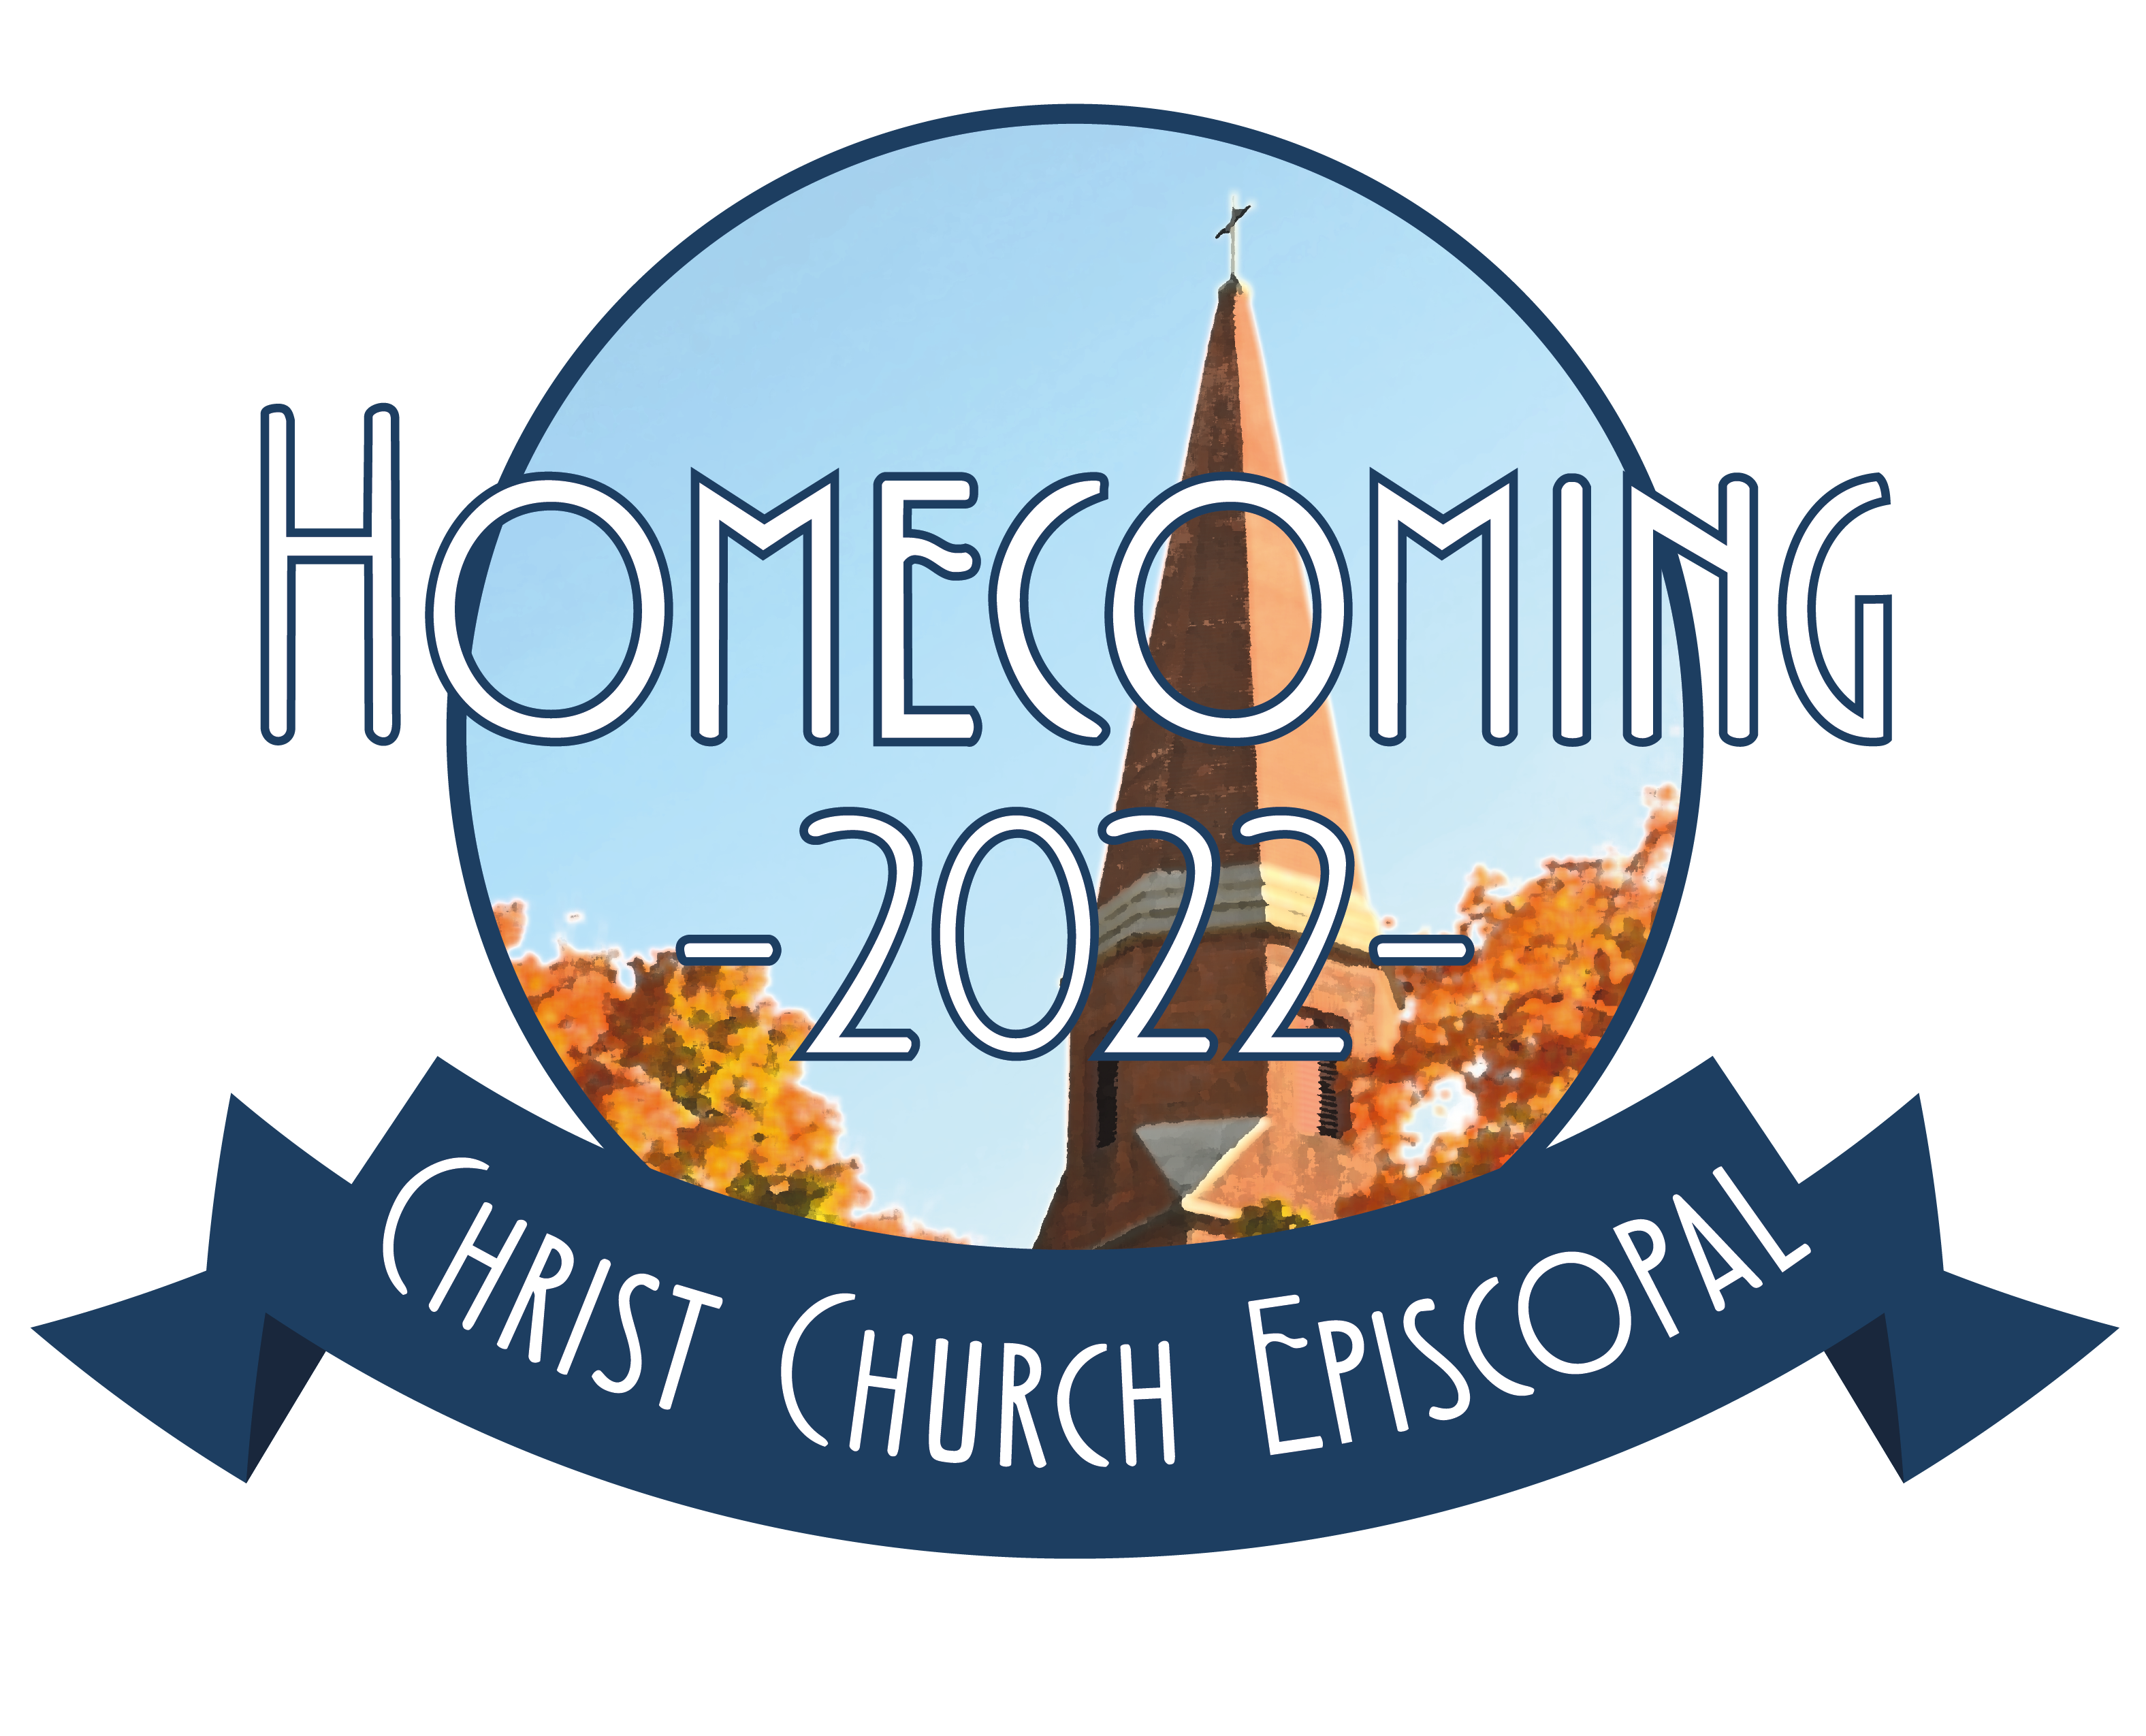 Homecoming at Christ Church 2022